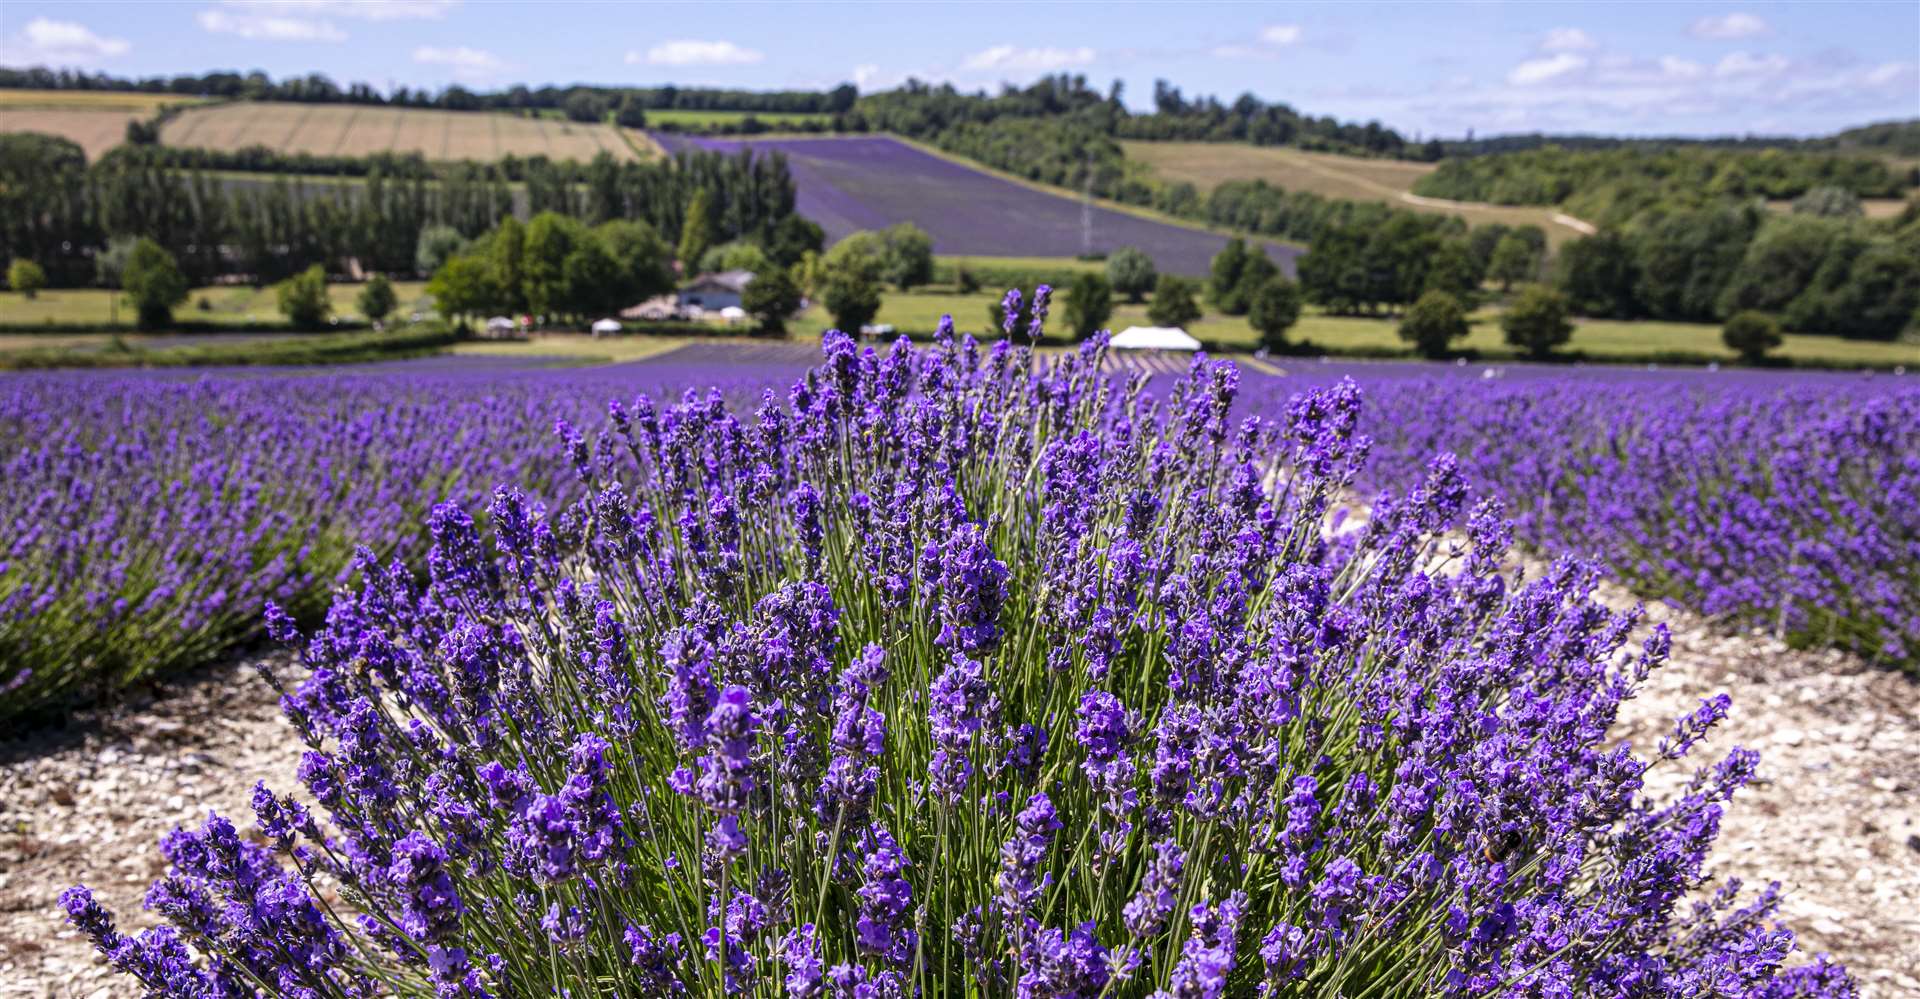 Lavender has been grown at Castle Farm in Shoreham since 1998. Picture: Castle Farm